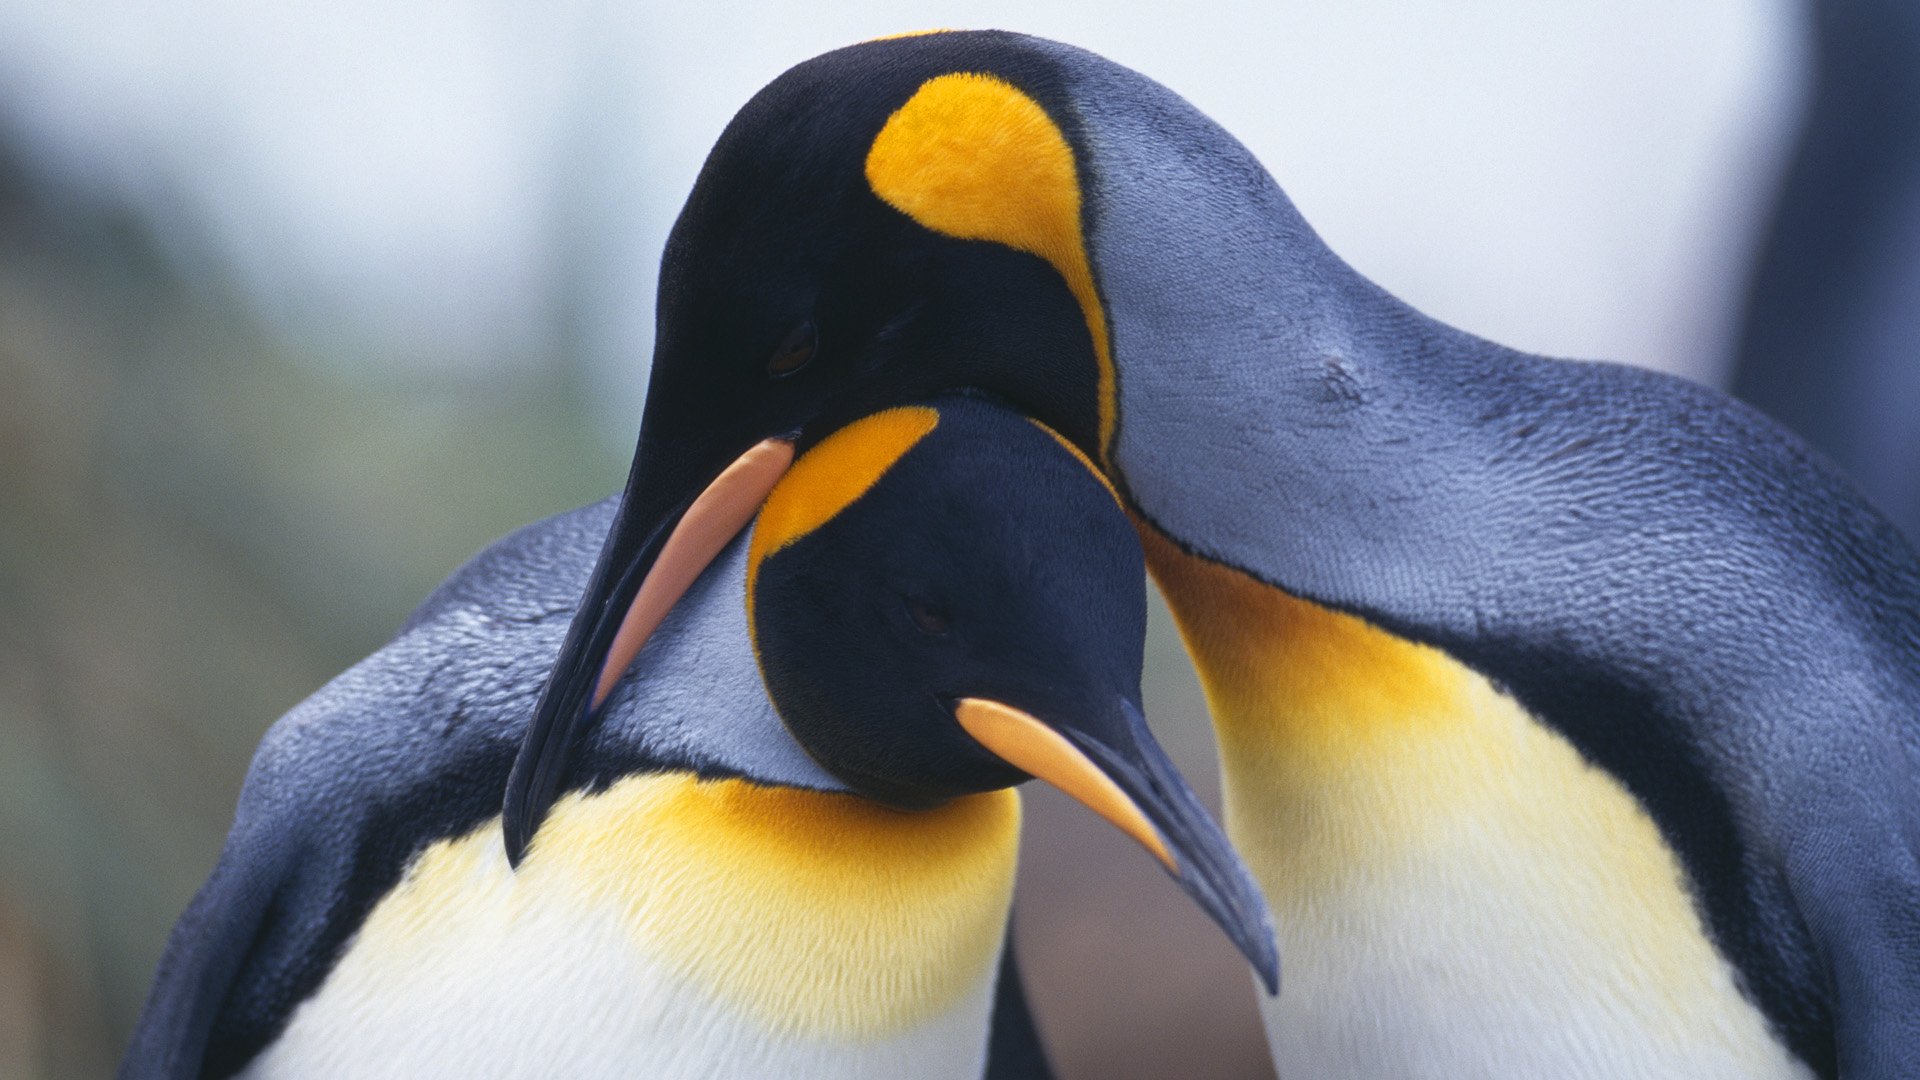 pinguin wallpaper,bird,king penguin,vertebrate,beak,penguin